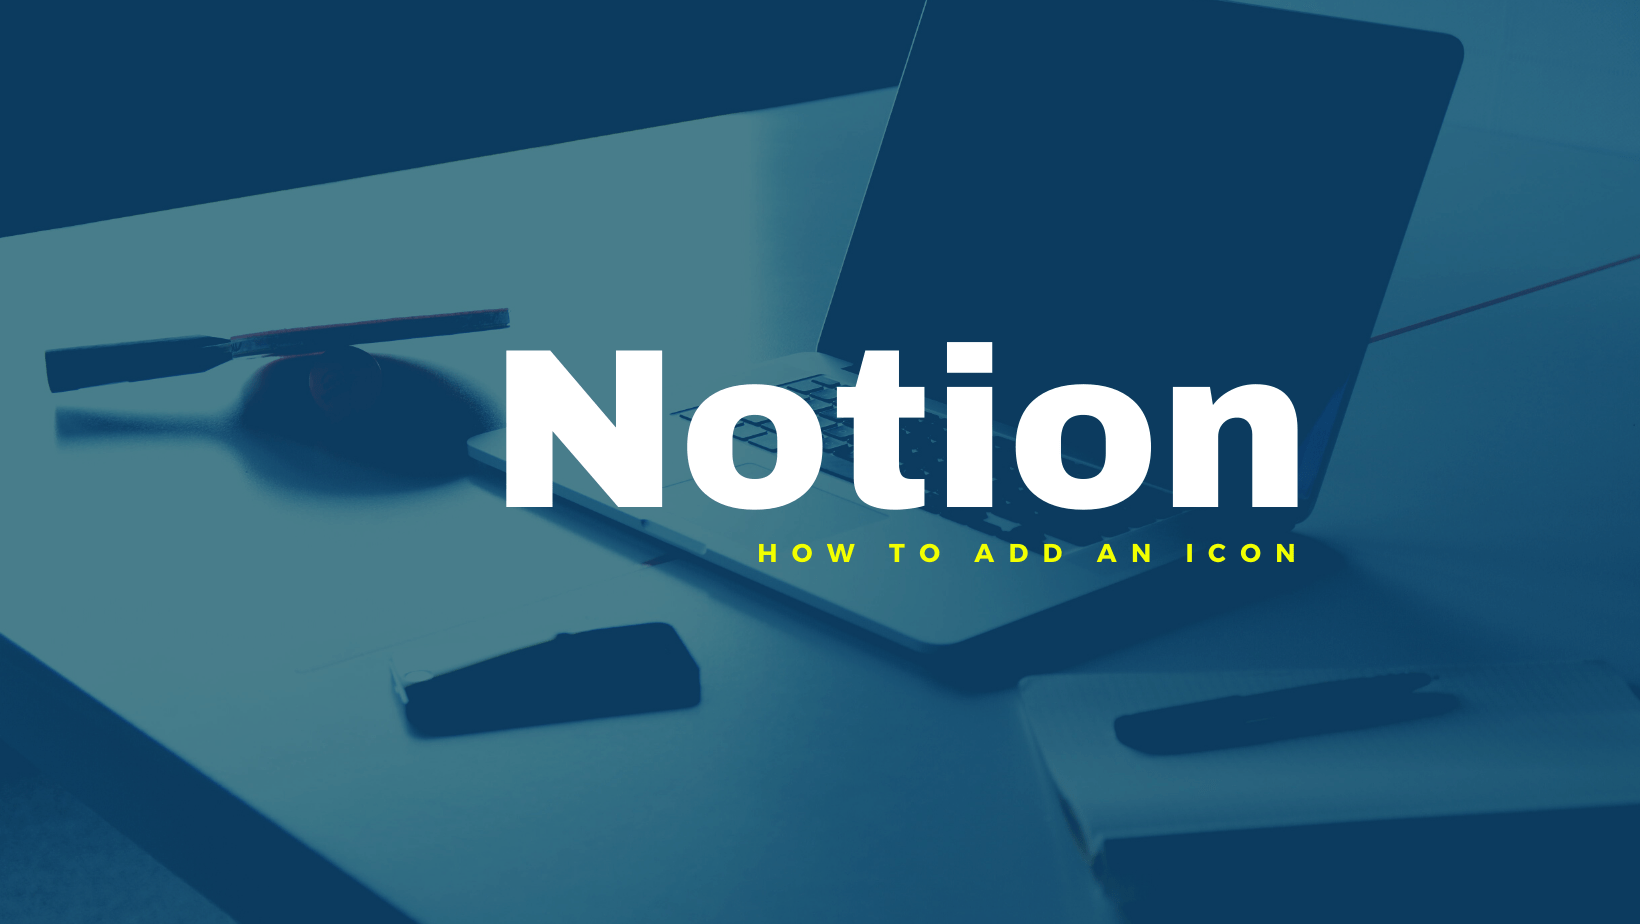 Hur man lägger till en ikon i Notion